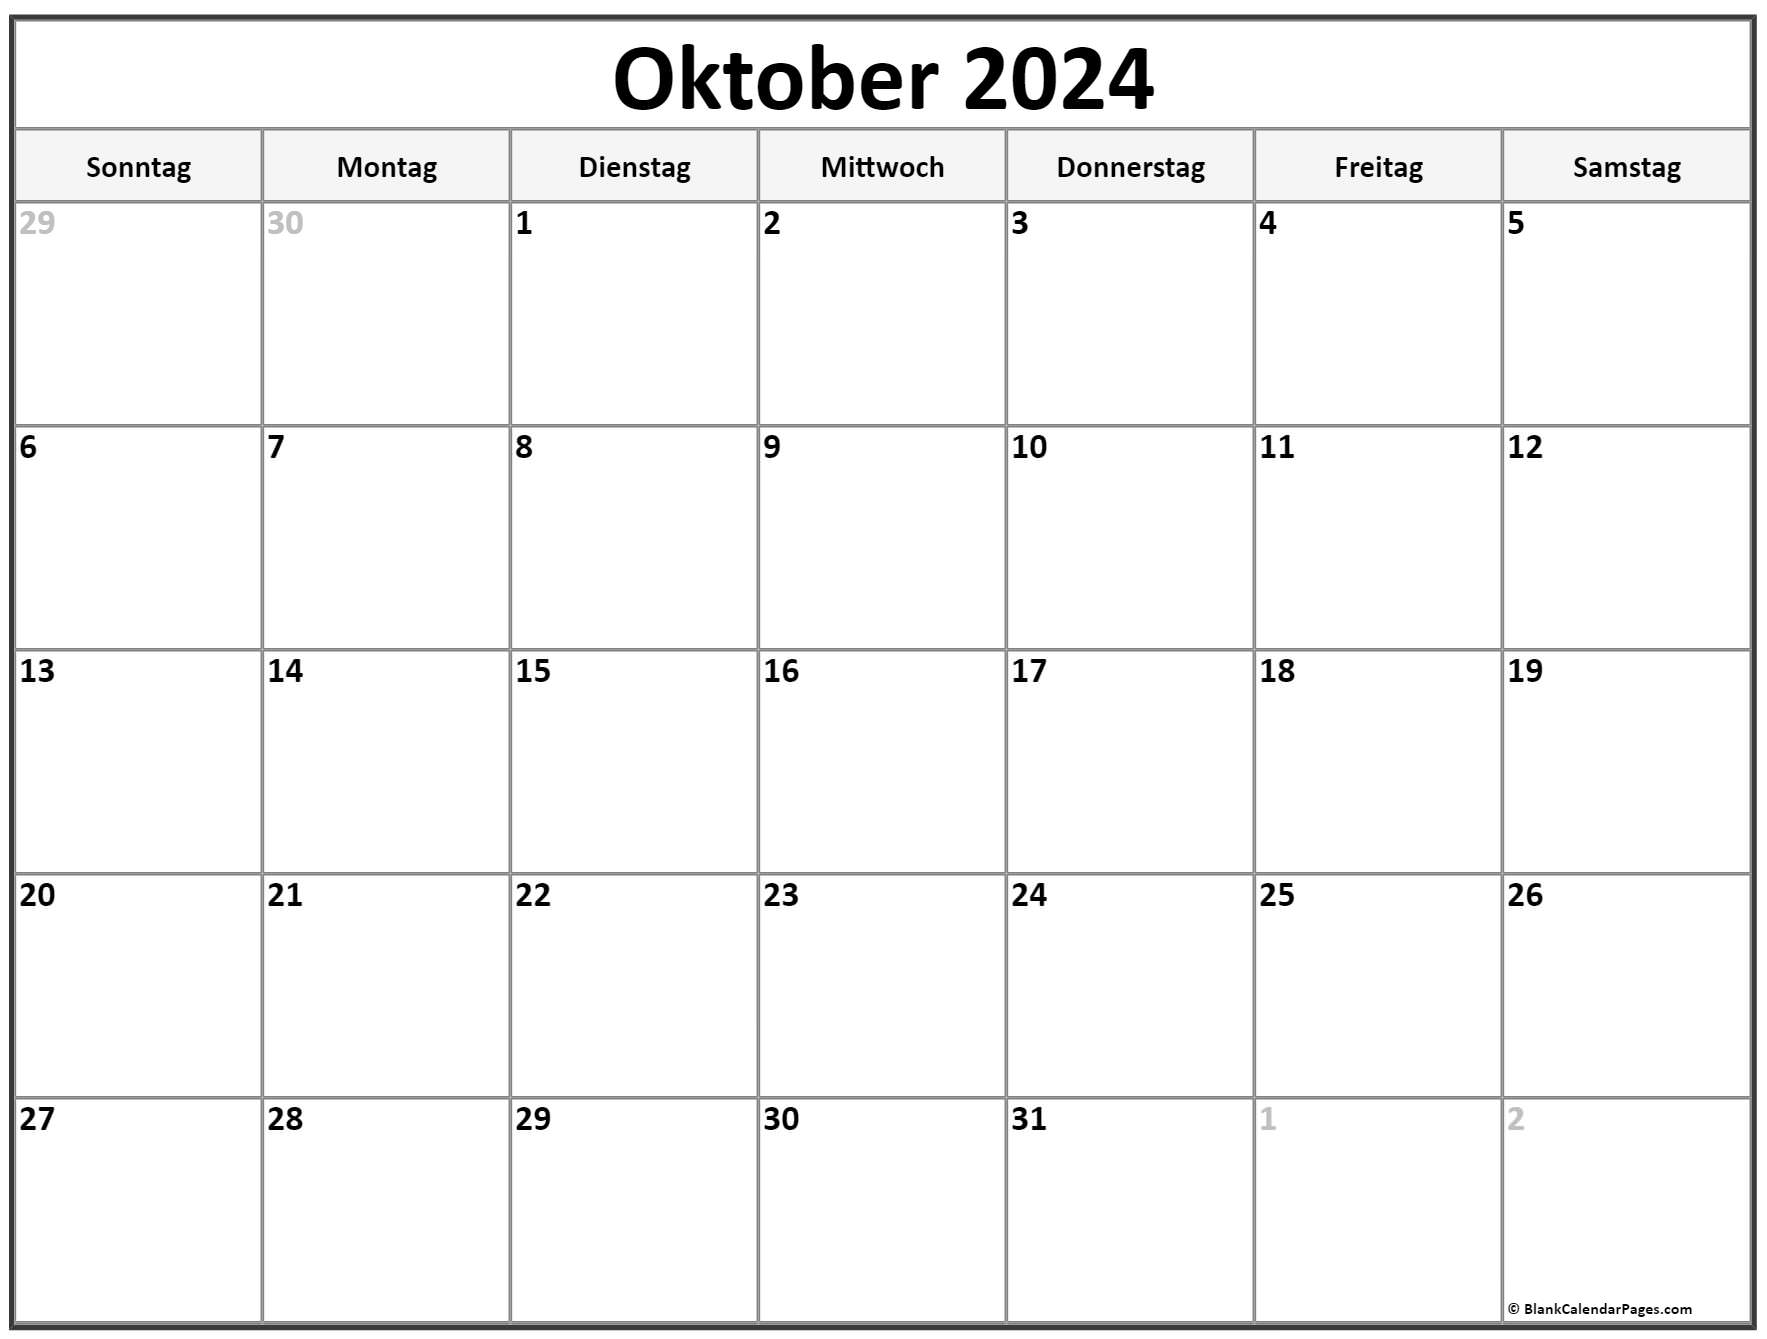  Oktober  2022  kalender  auf Deutsch kalender  2022 